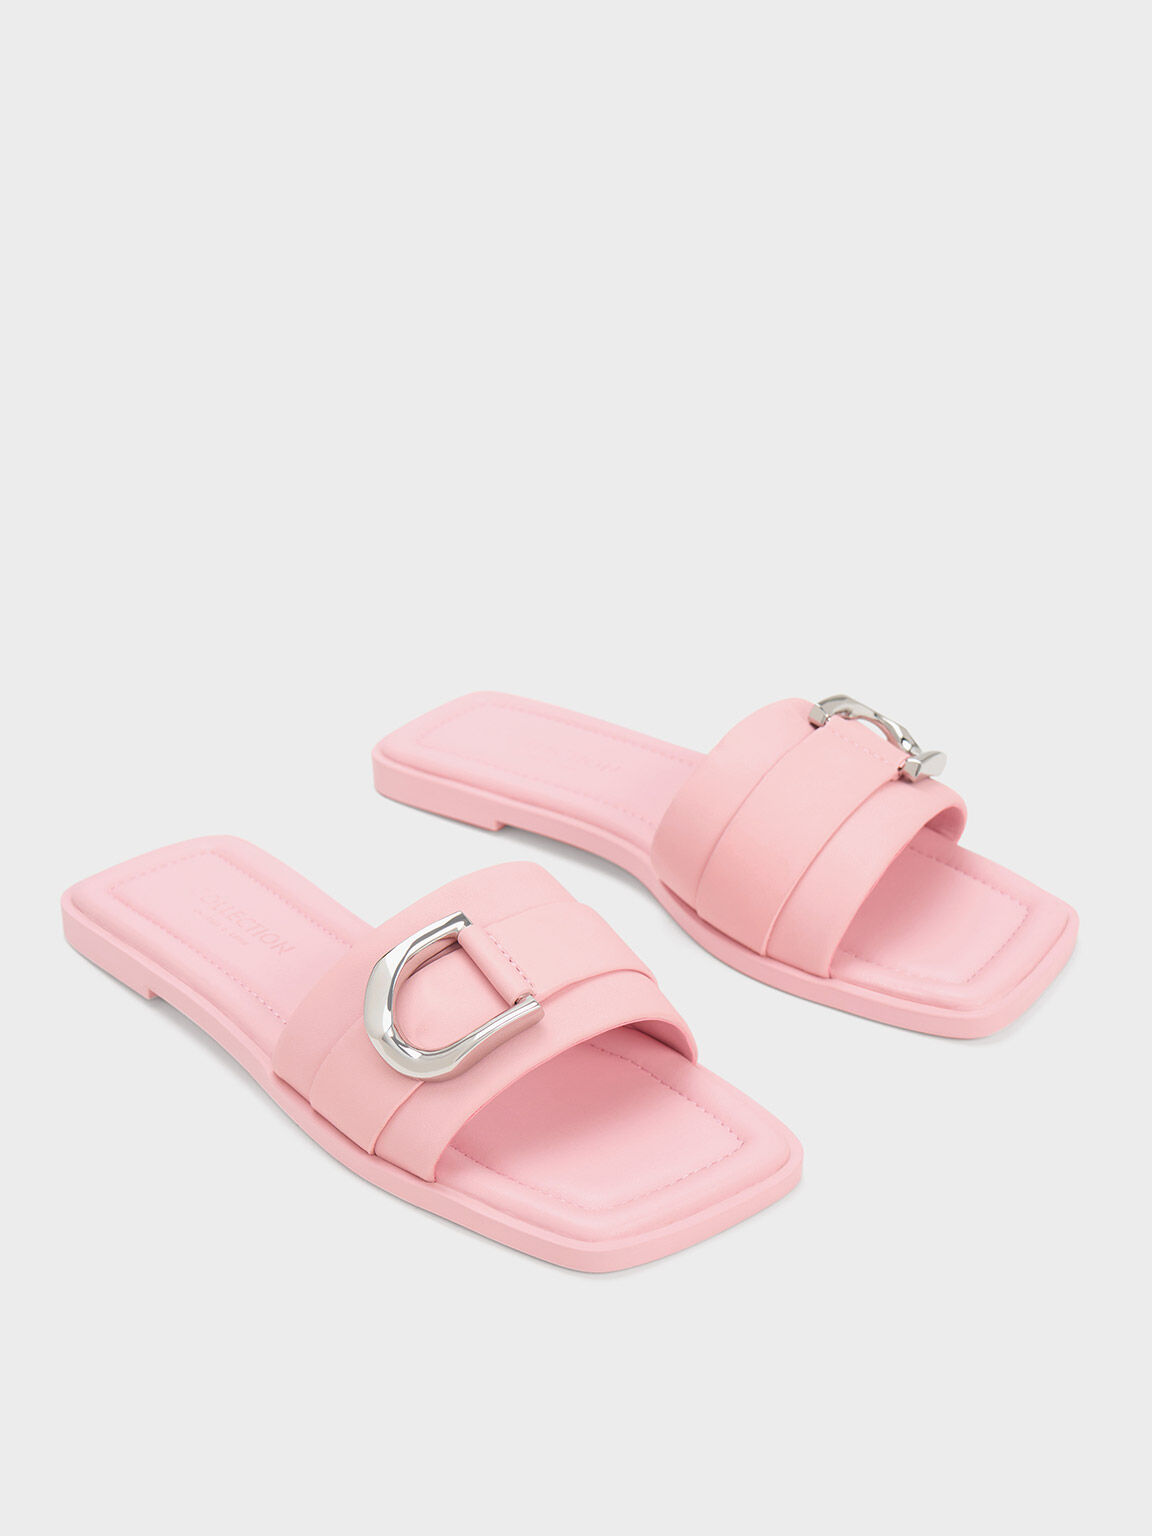 Sandal Slide Gabine Leather, Pink, hi-res